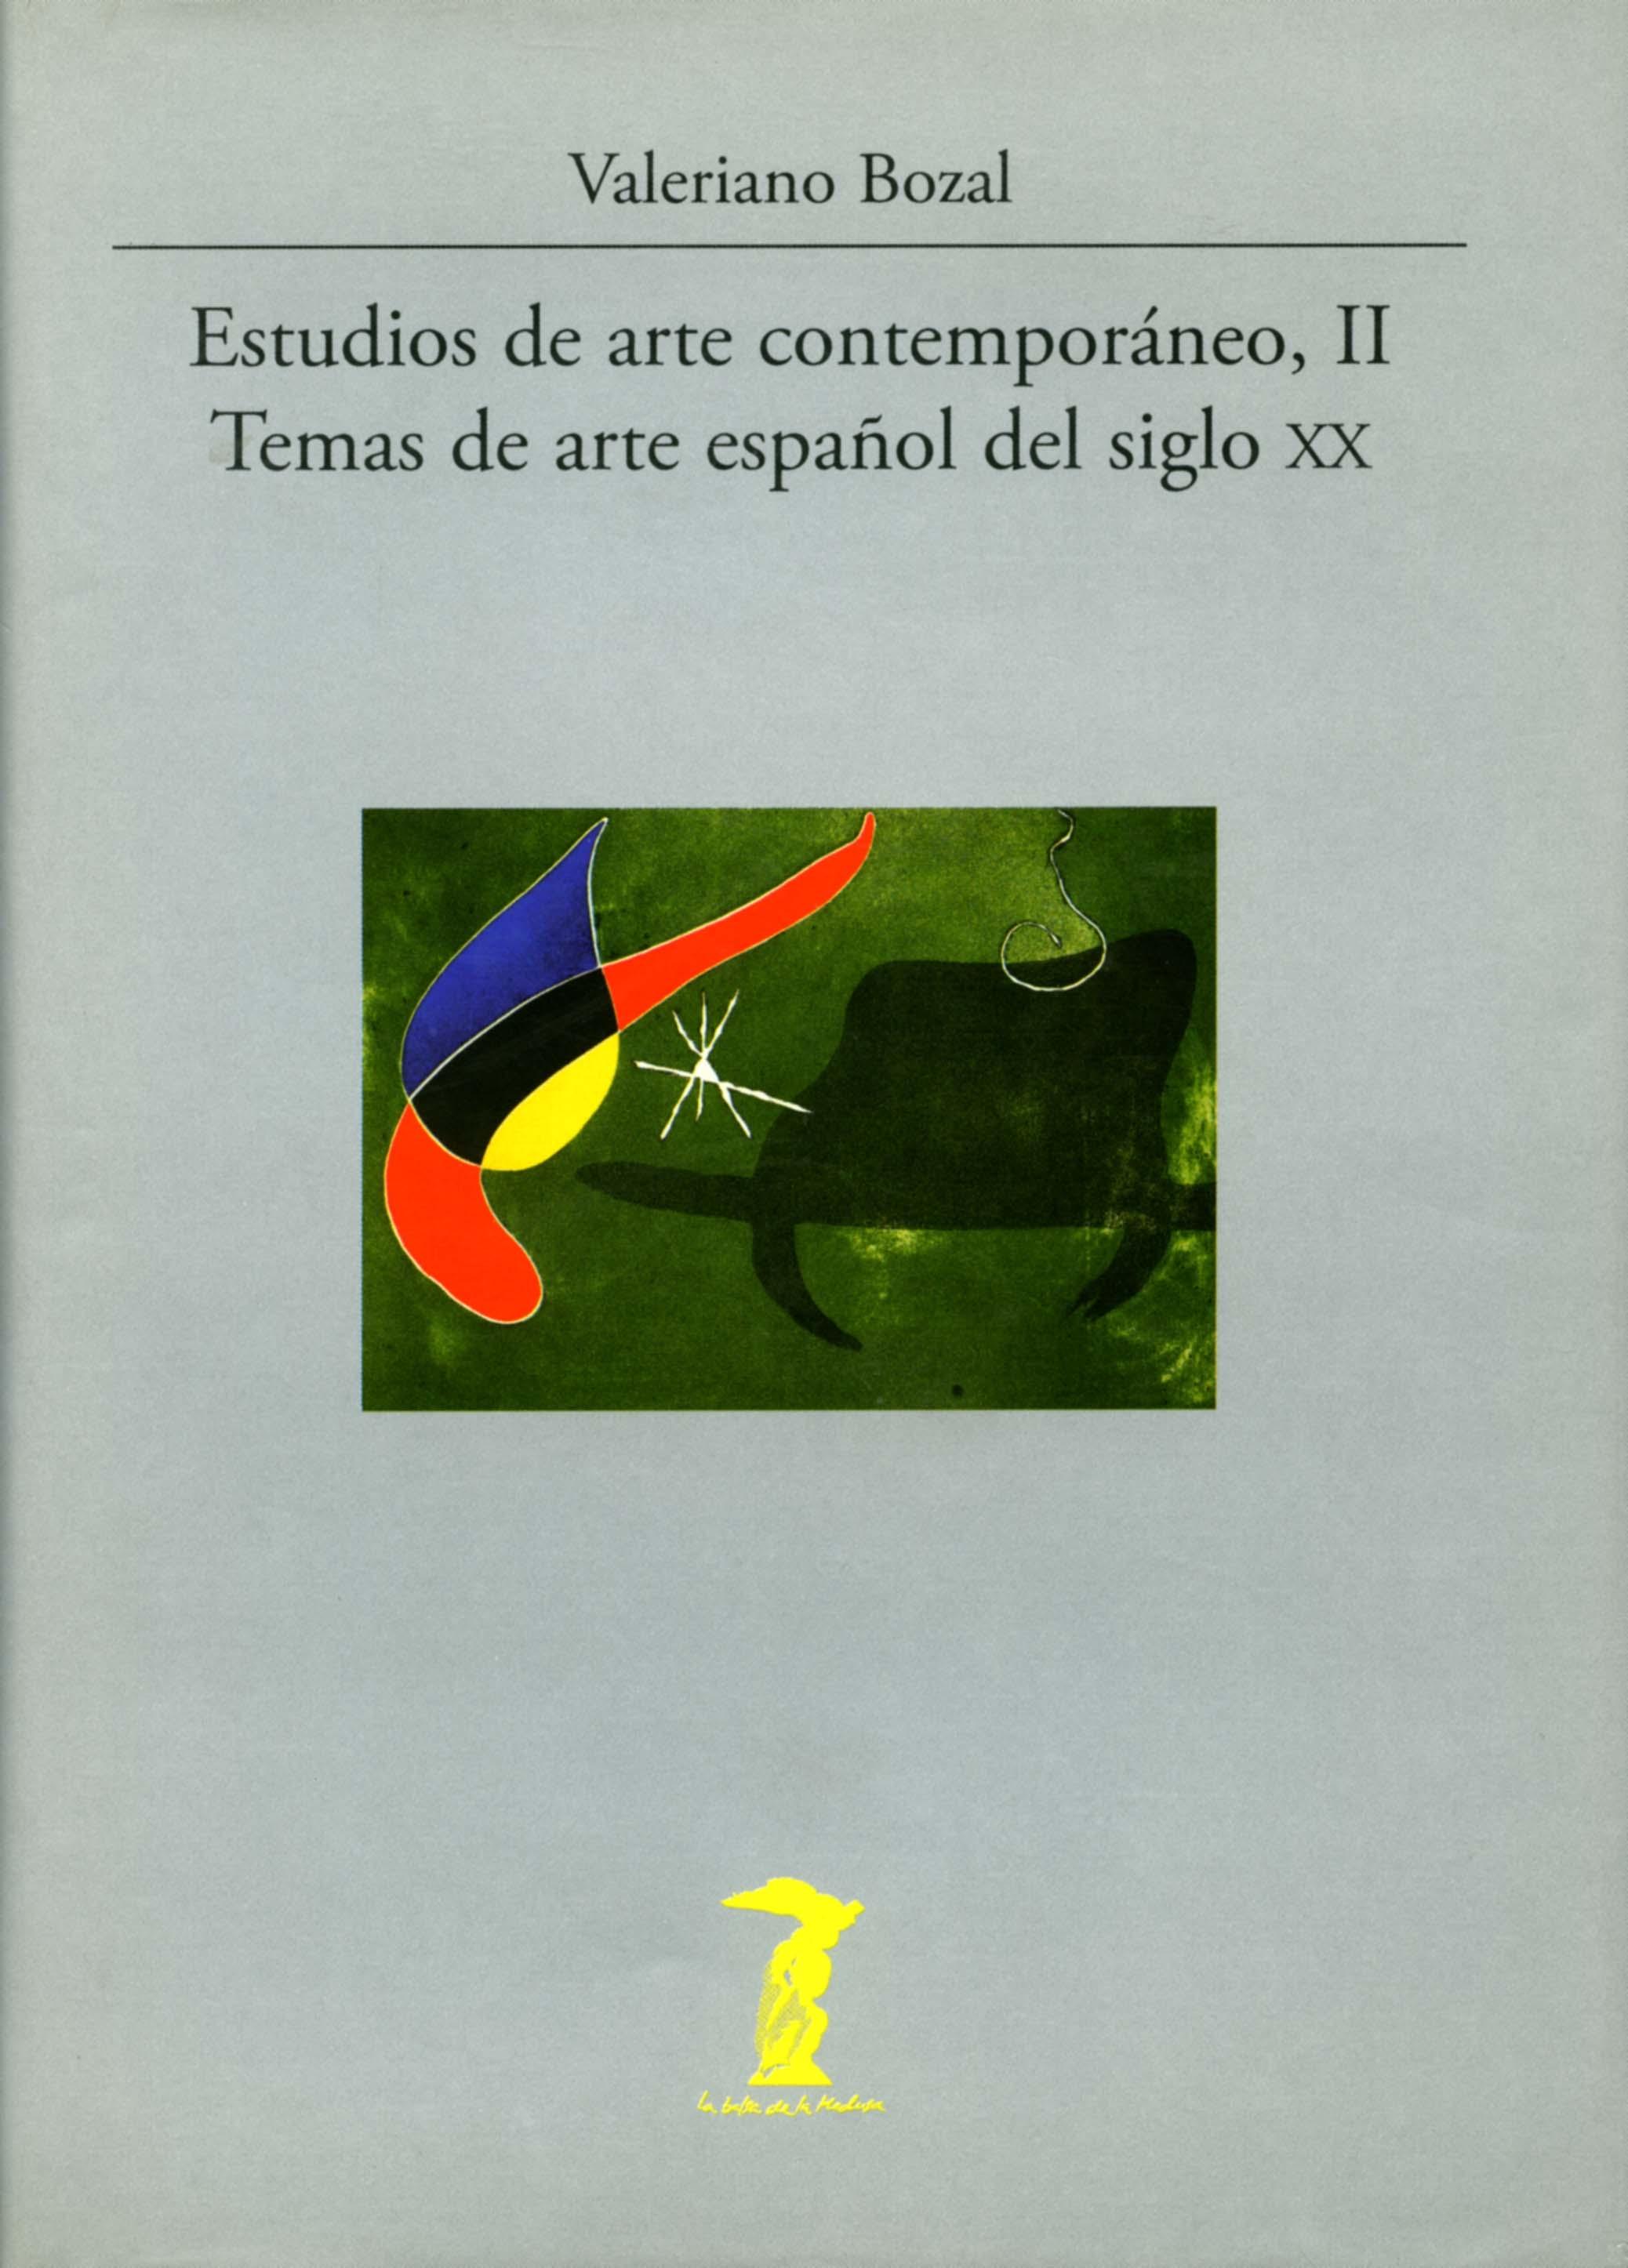 Estudios de arte contemporáneo - II: Temas de arte español del siglo XX. 